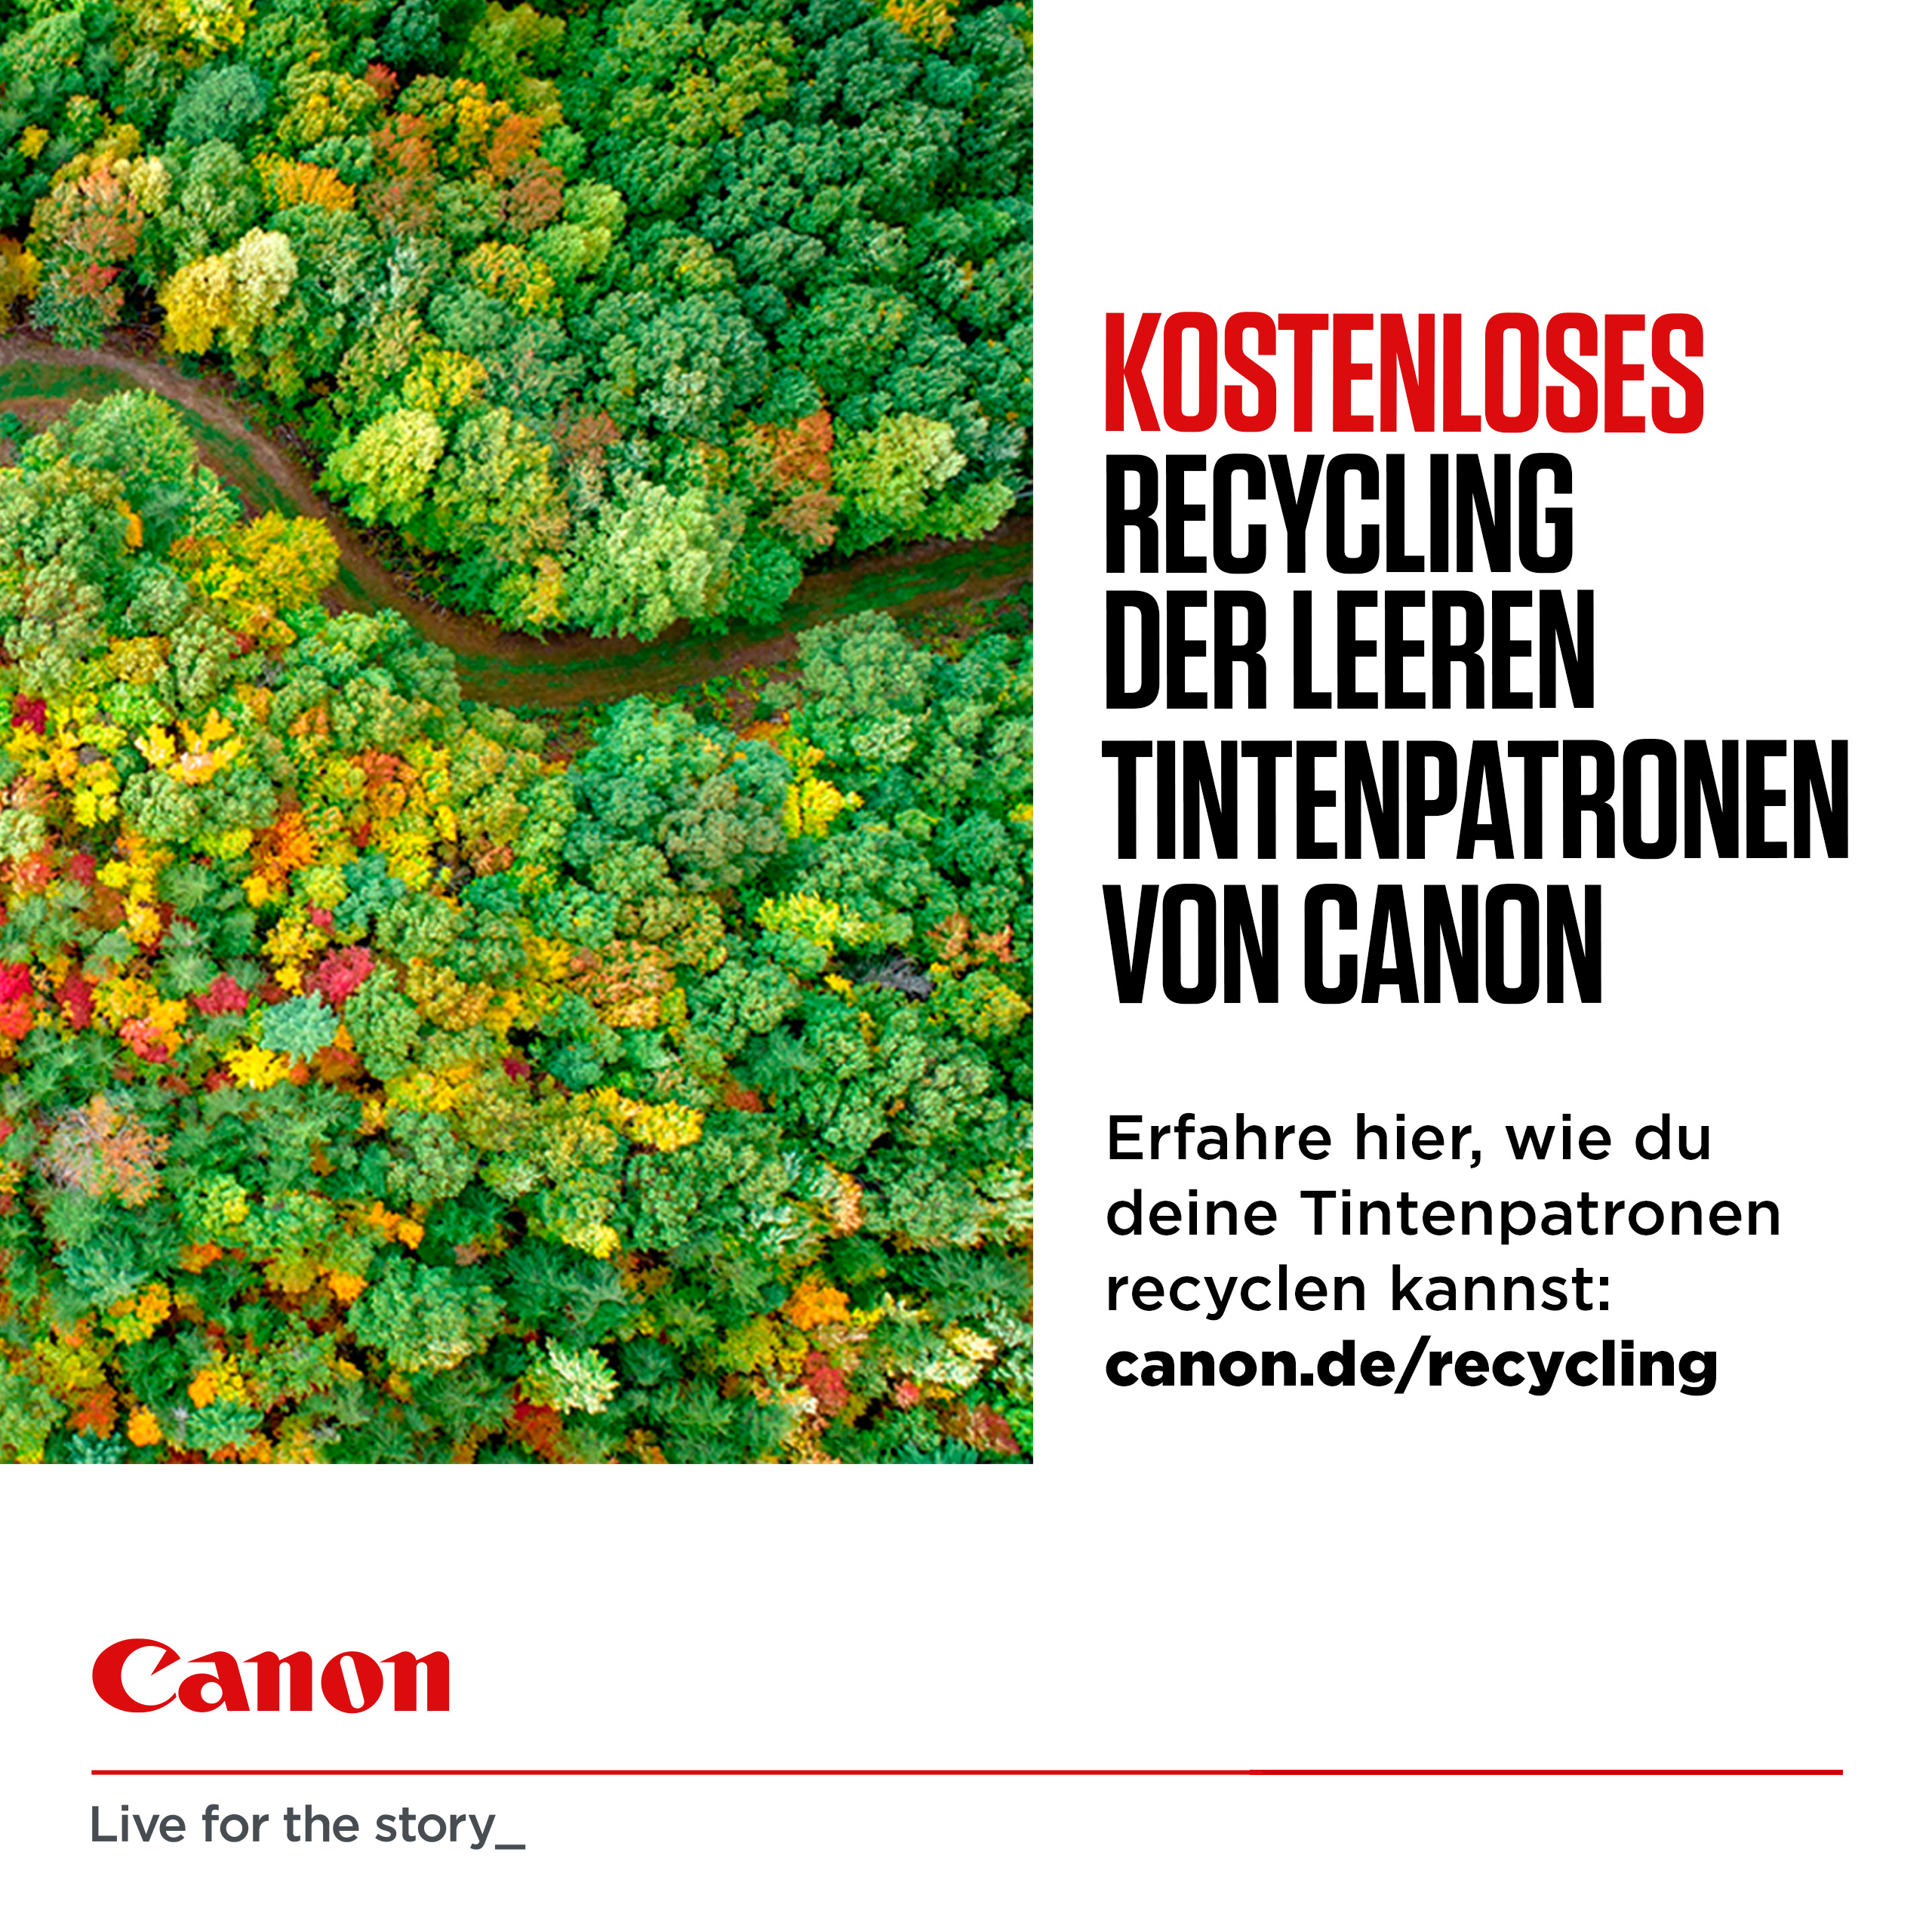 Canon CL-546XL - 13 ml - Hohe Ergiebigkeit - Farbe (Cyan, Magenta, Gelb)